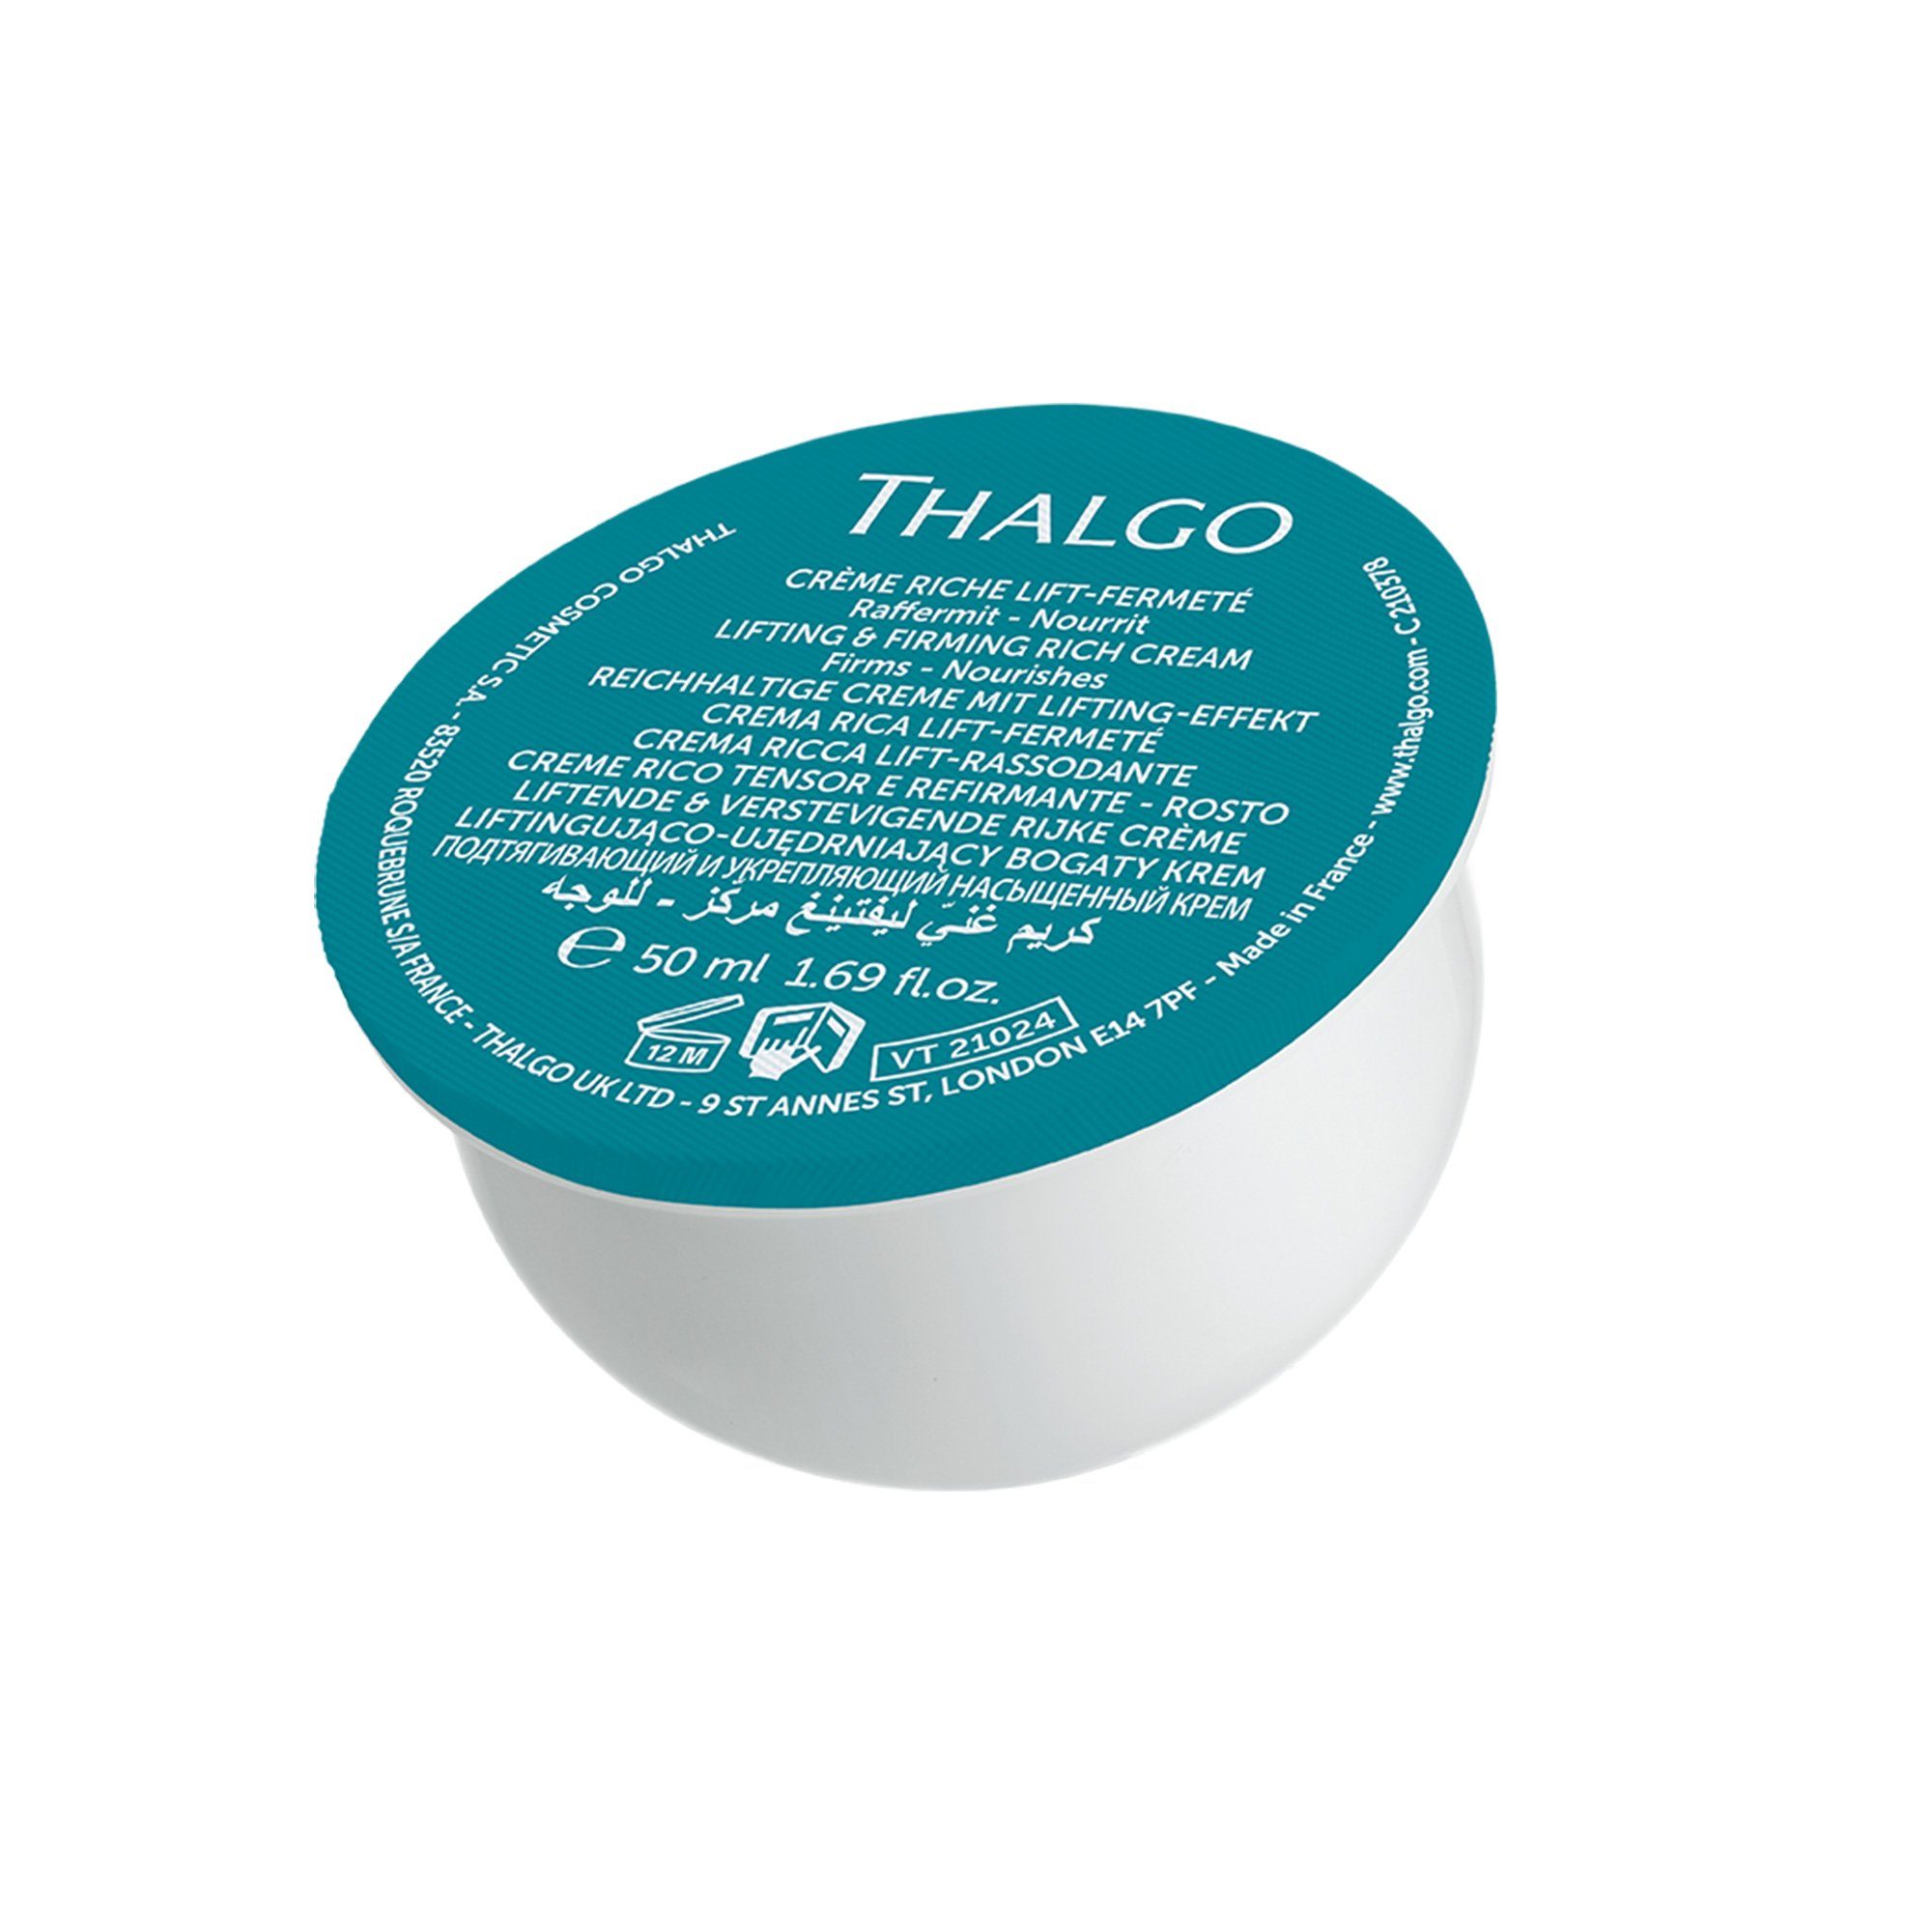 THALGO Anti-Aging-Creme Refill Reichhaltige Intensivcreme mit Lifting-Effekt, 50 ml